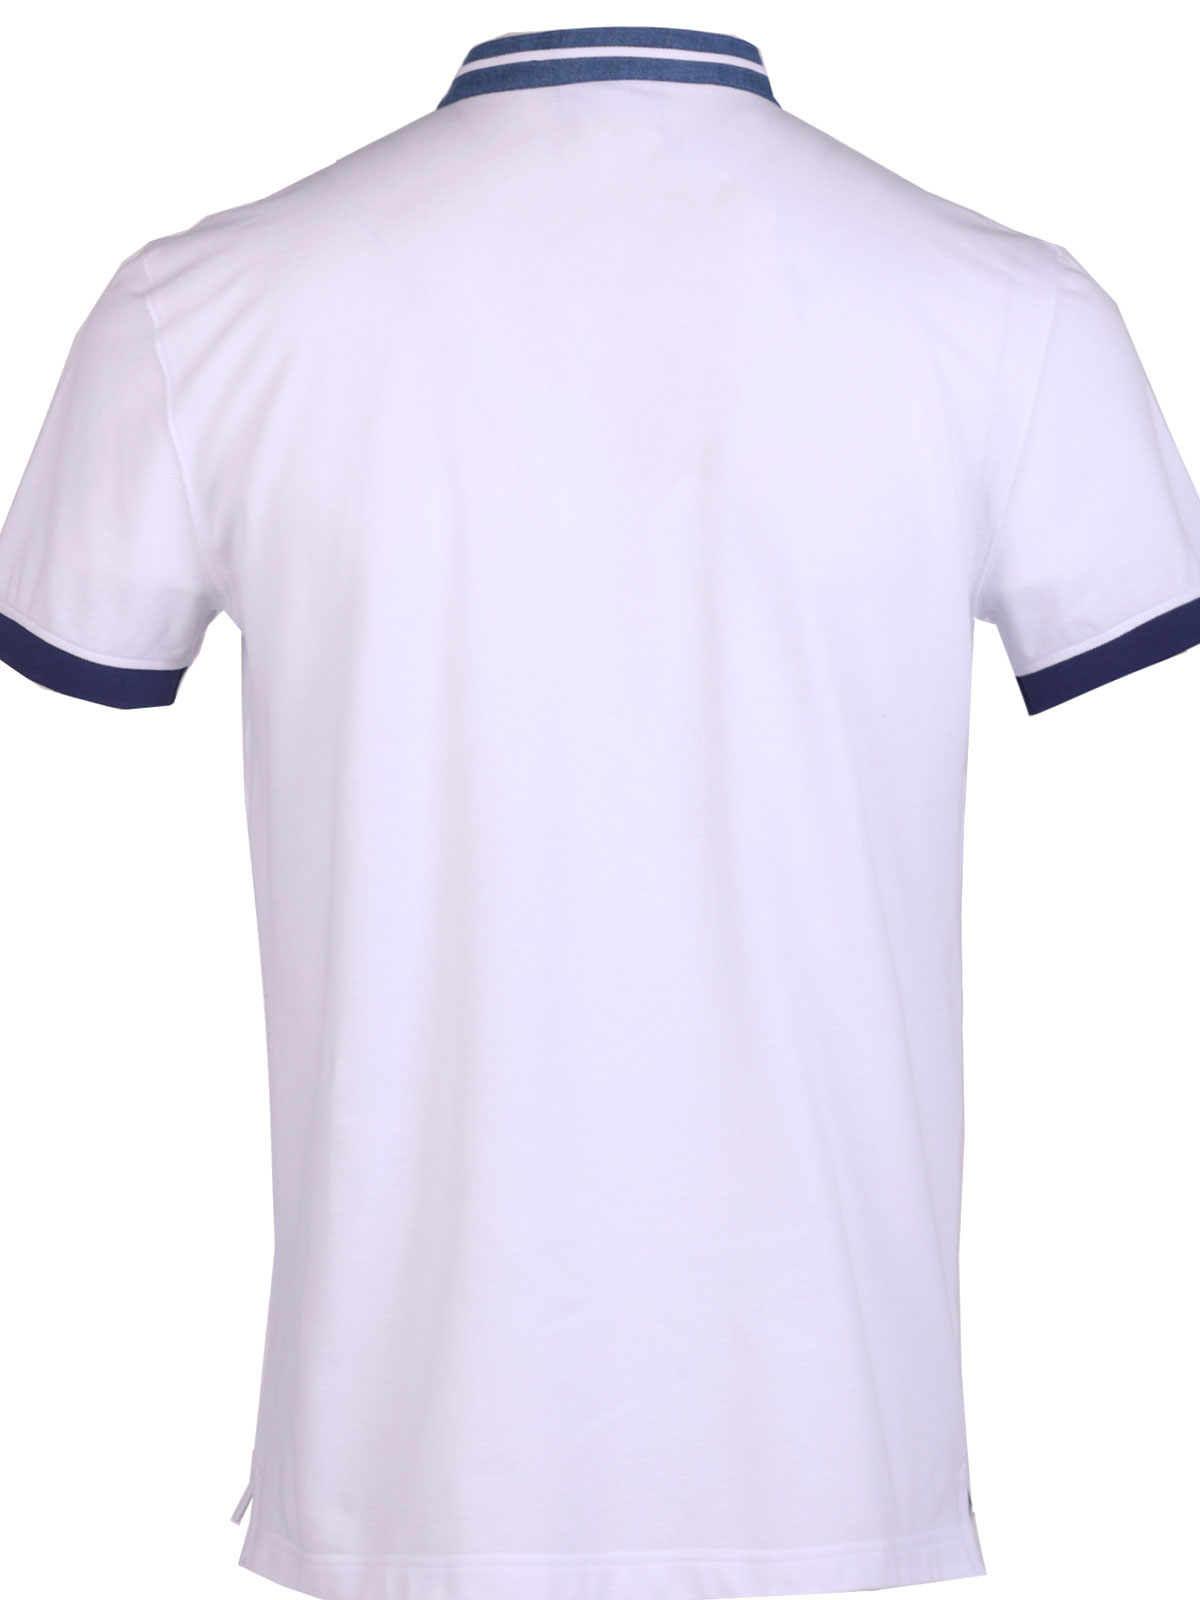 Λευκή μπλούζα με κοντό μανίκι - 93439 € 40.49 img2